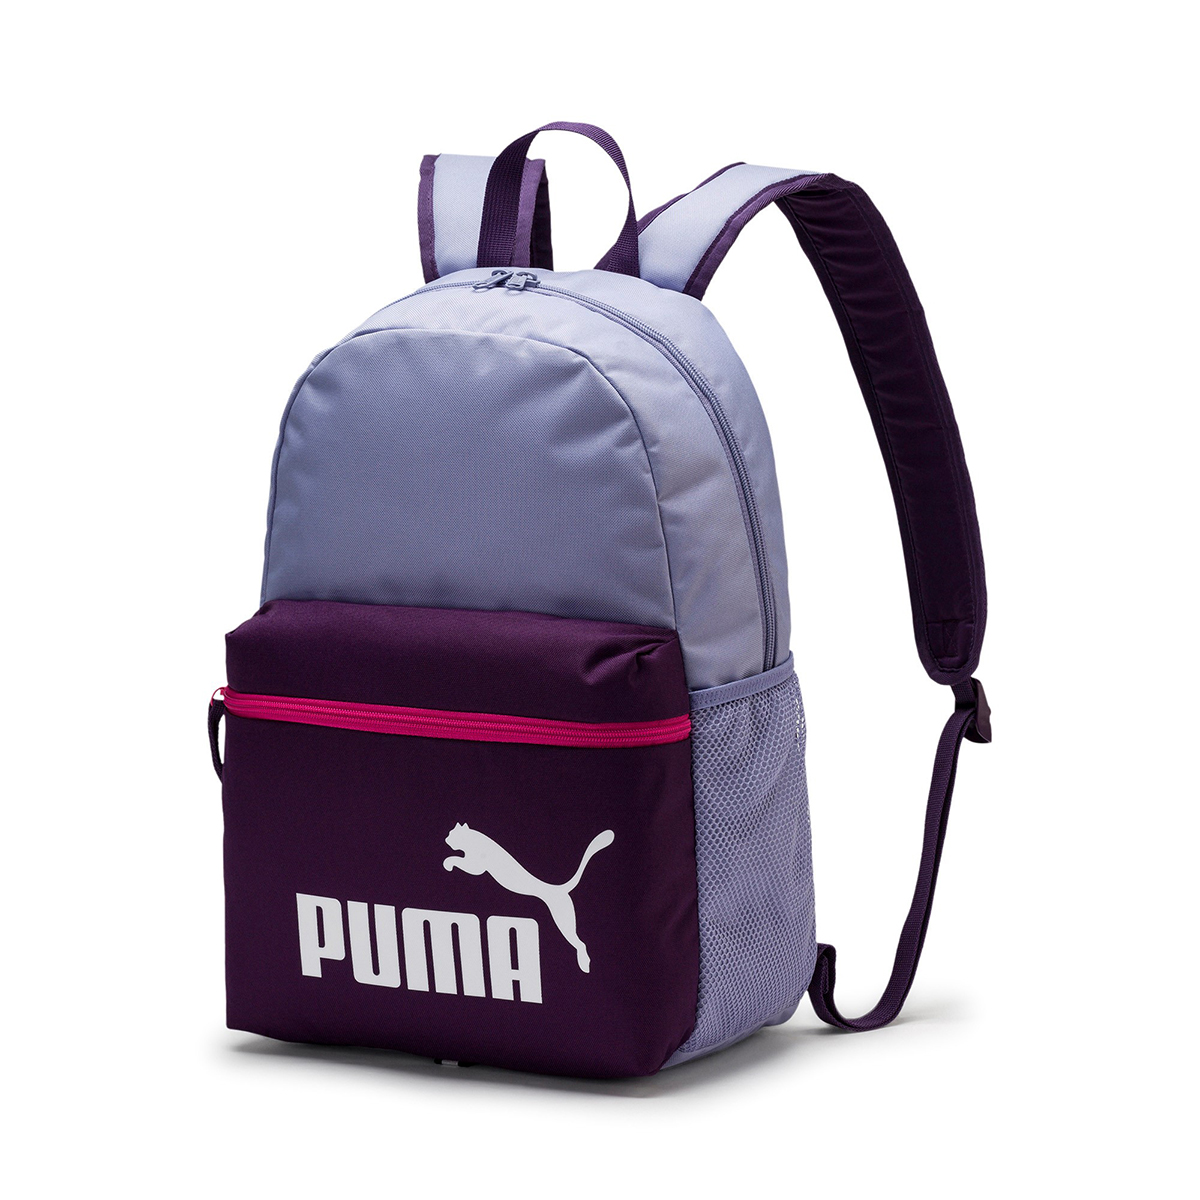 PUMA Phase Backpack Rucksack Sport Freizeit Reise Schule 75487 13 von Puma